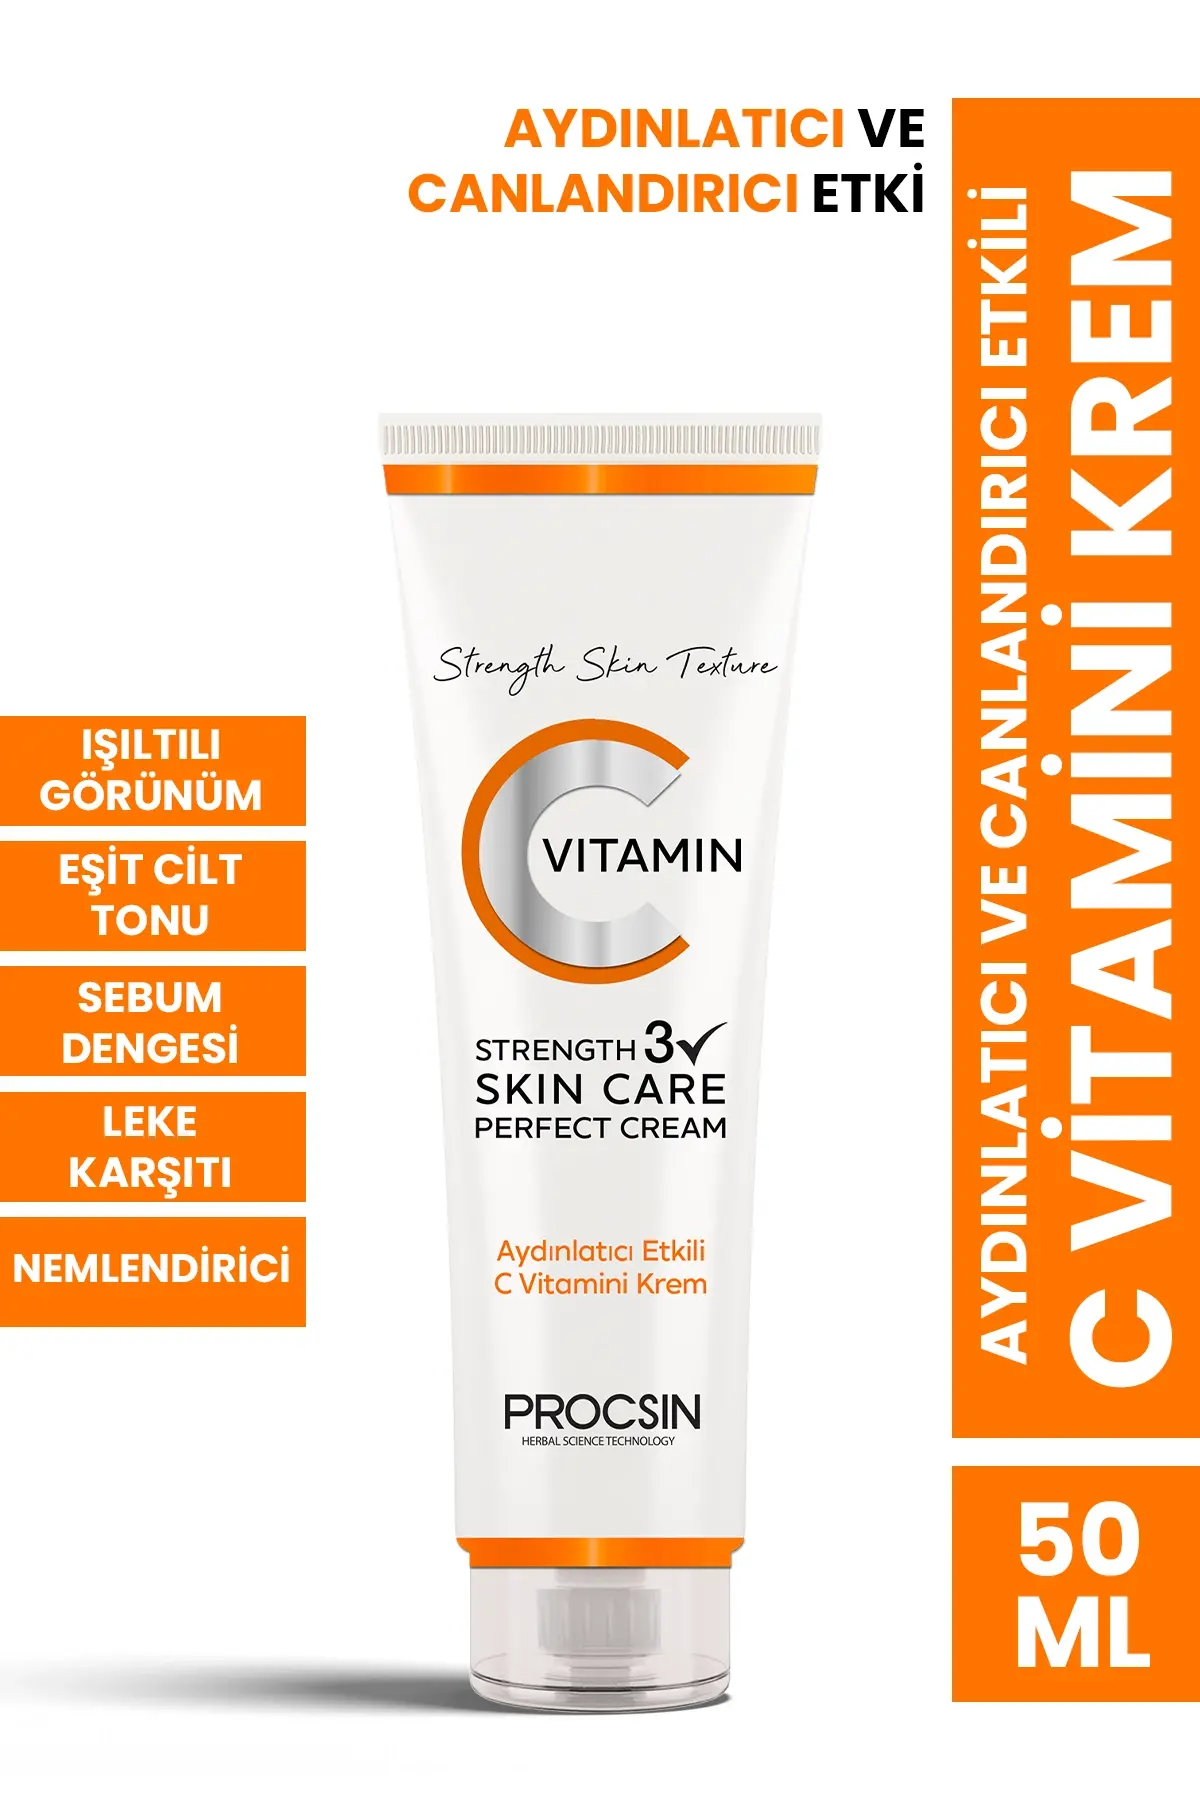 PROCSIN Brightening C Vitamin Cream 50 ML - 1